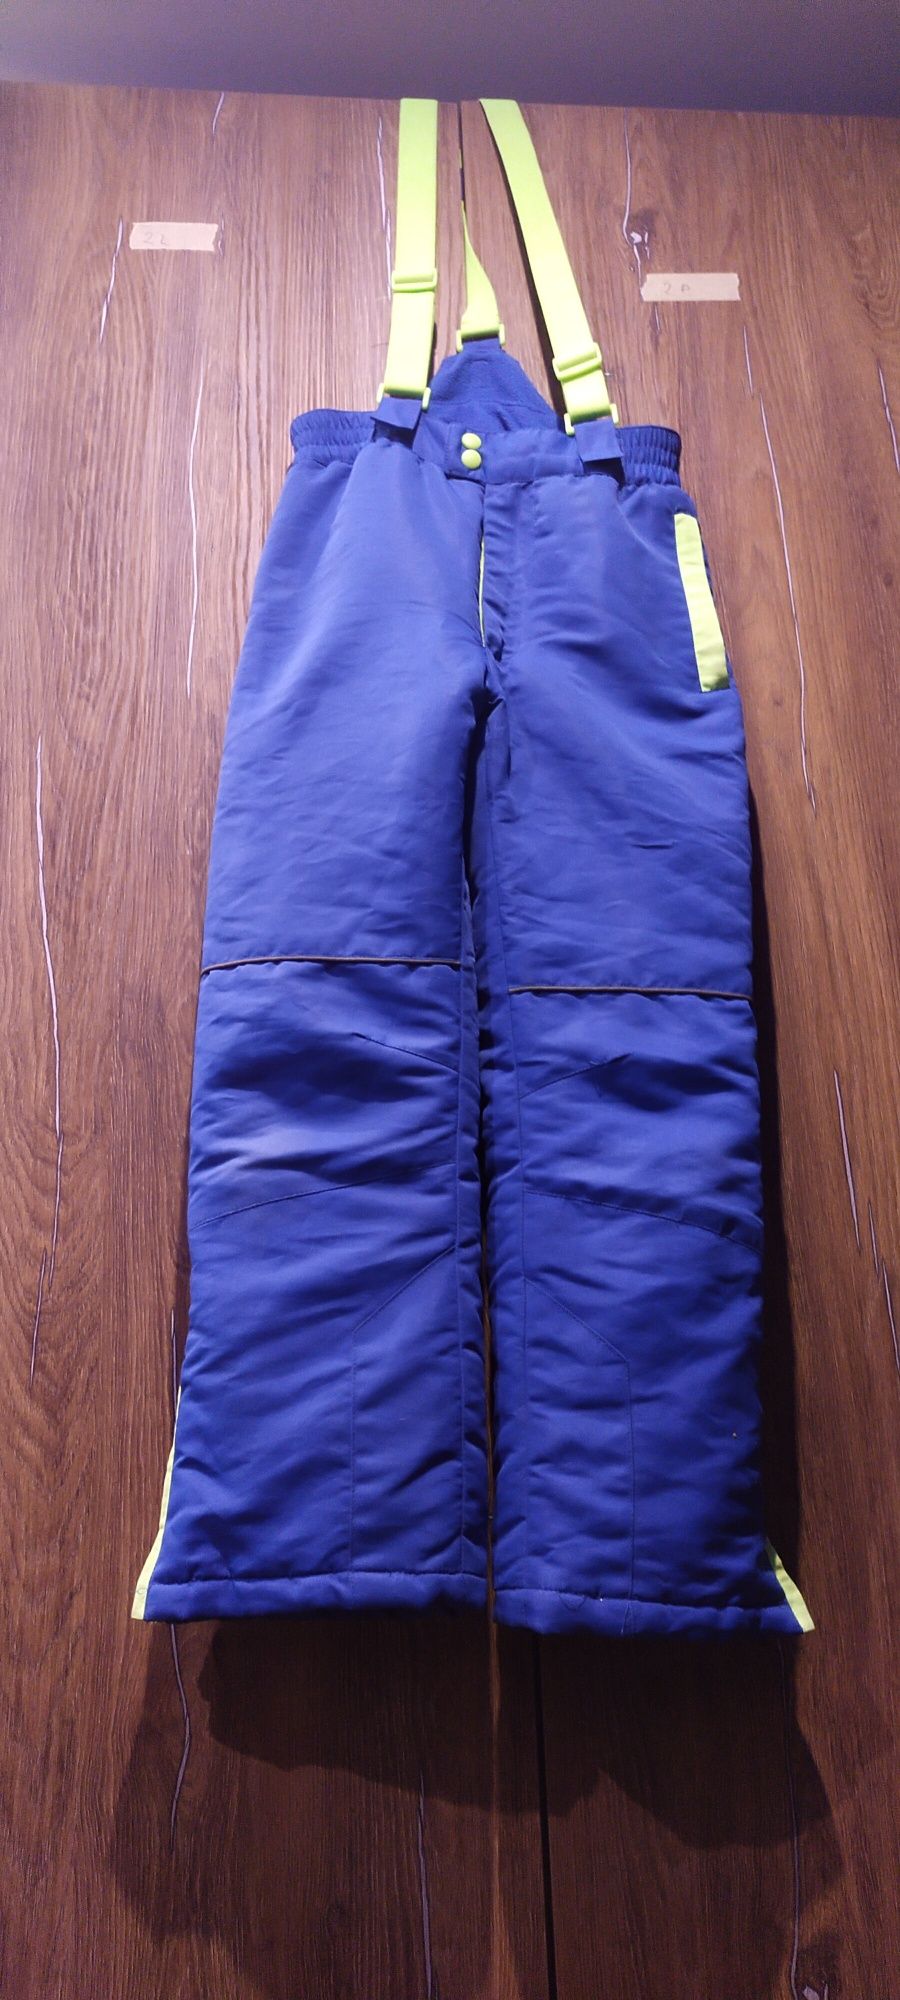 Spodnie narciarskie 140cm